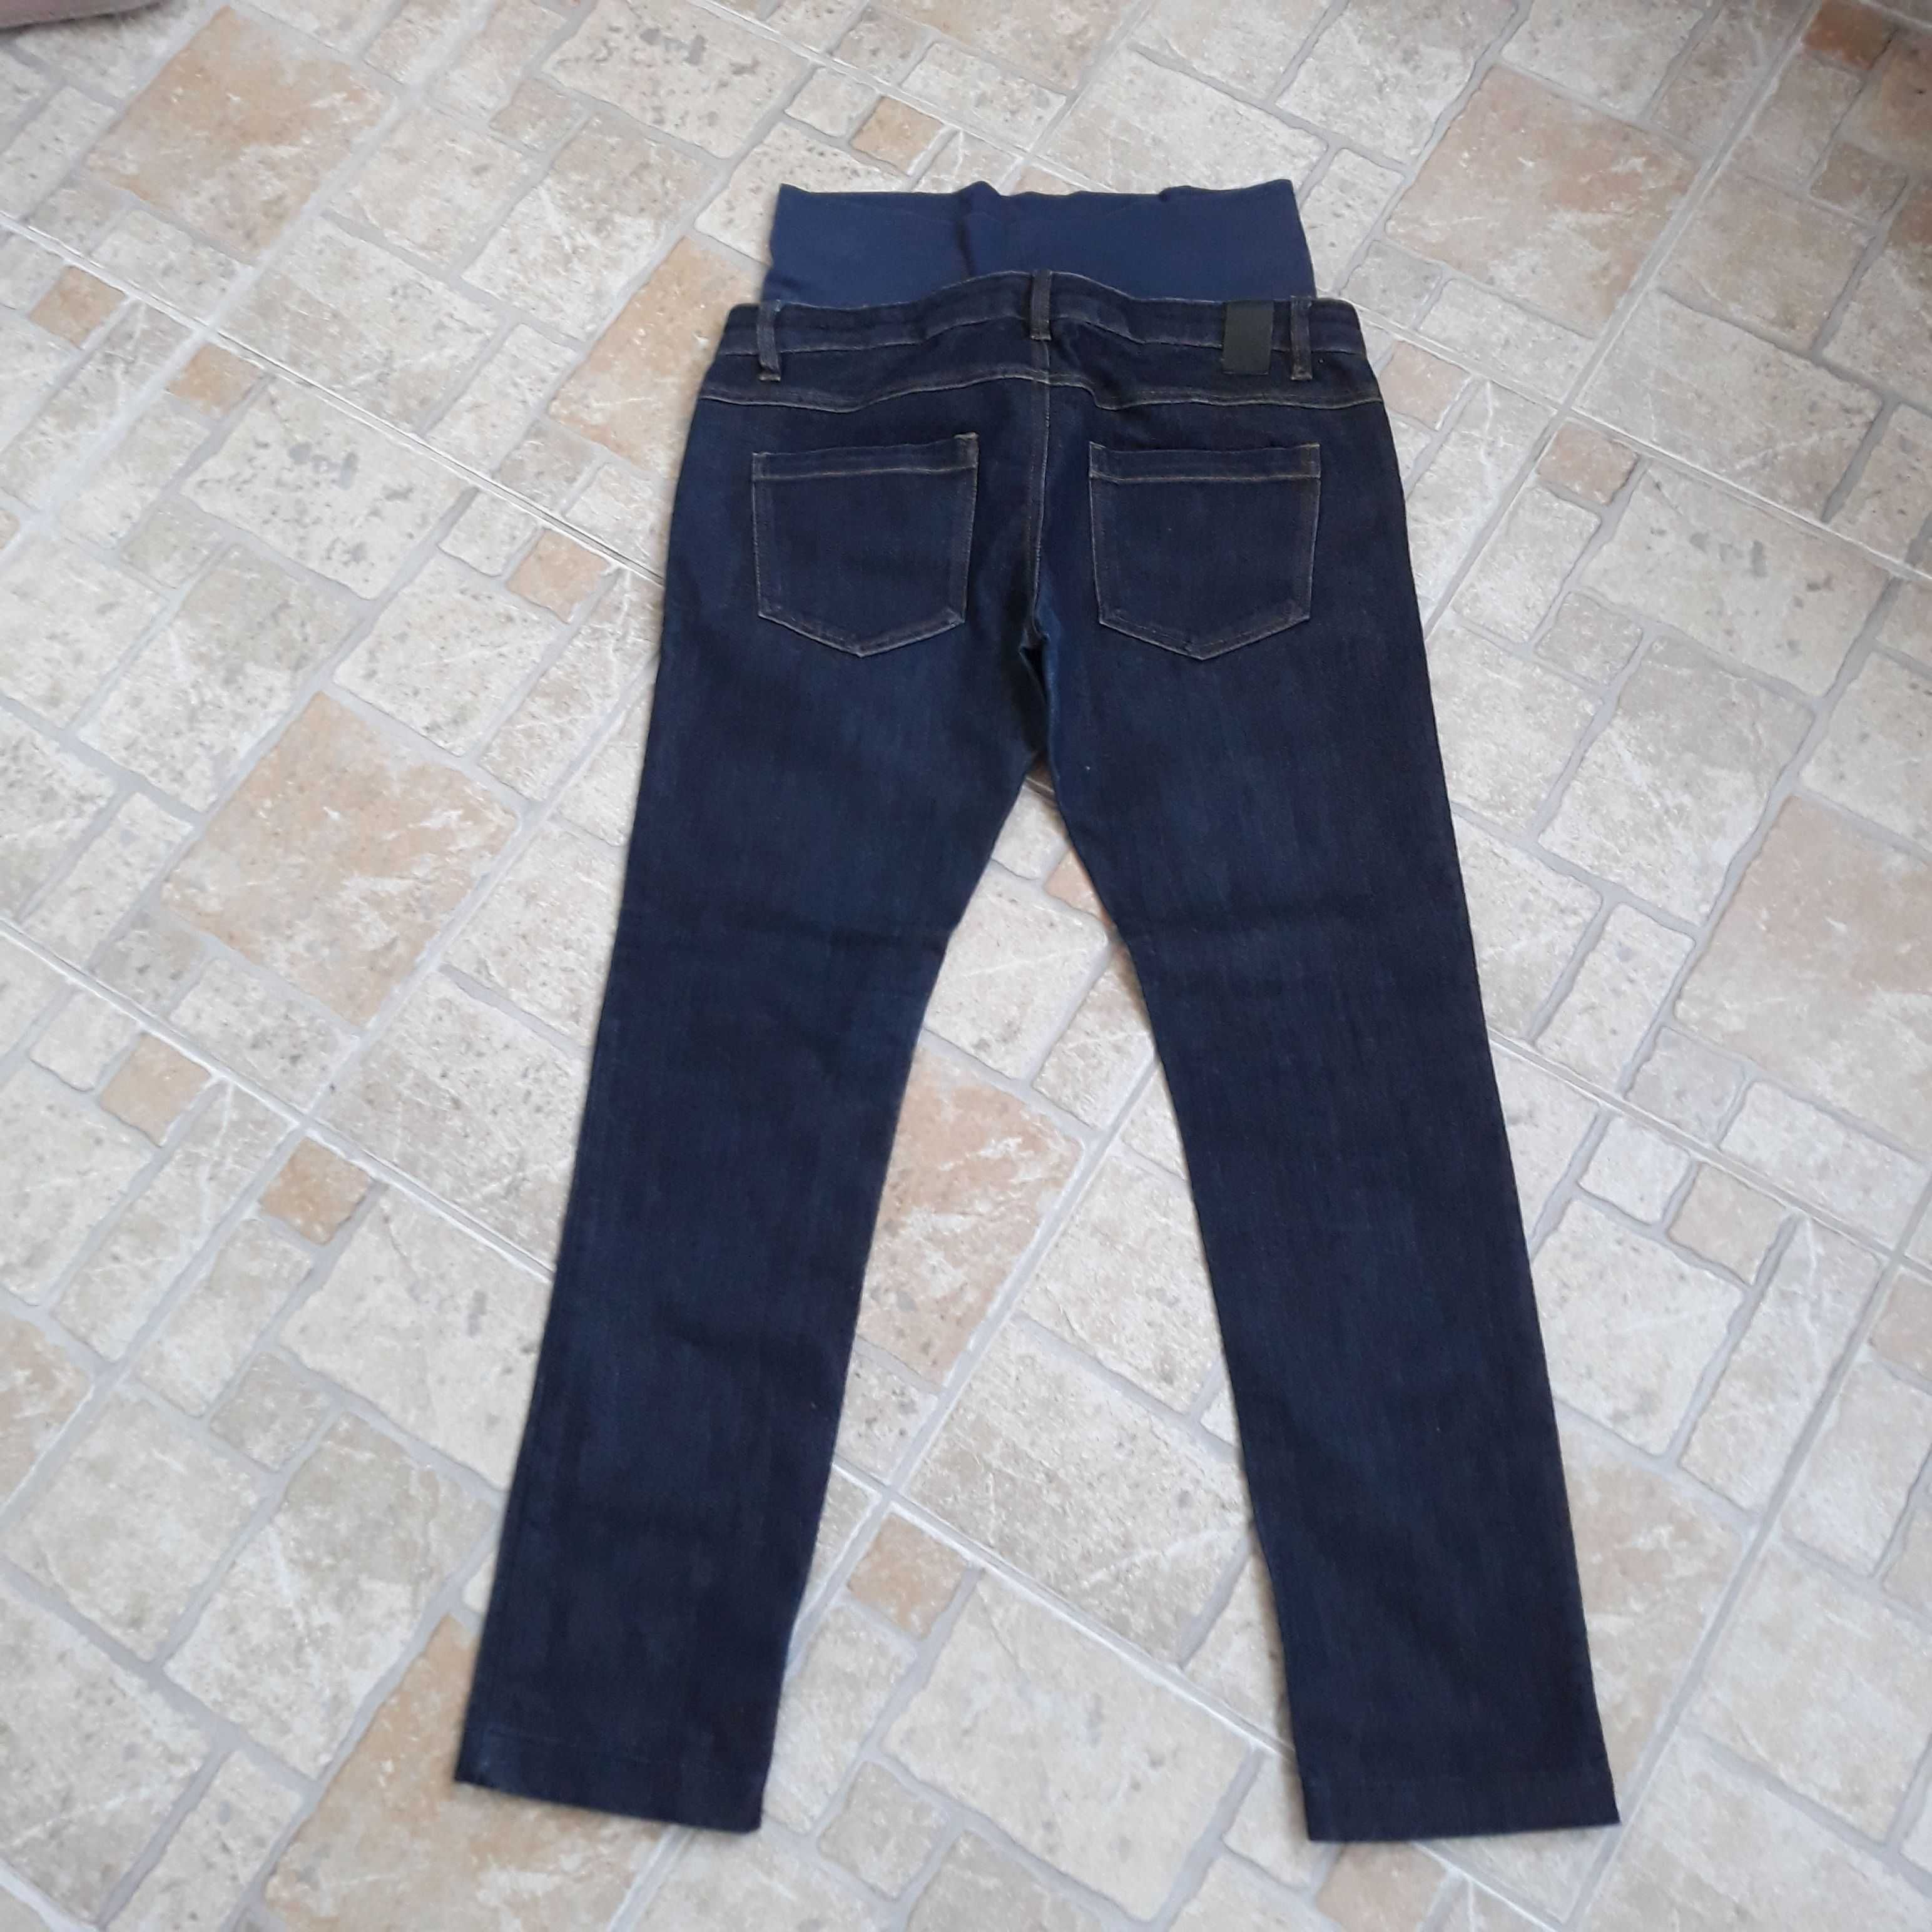 Spodnie ciążowe jeansowe W29/L34